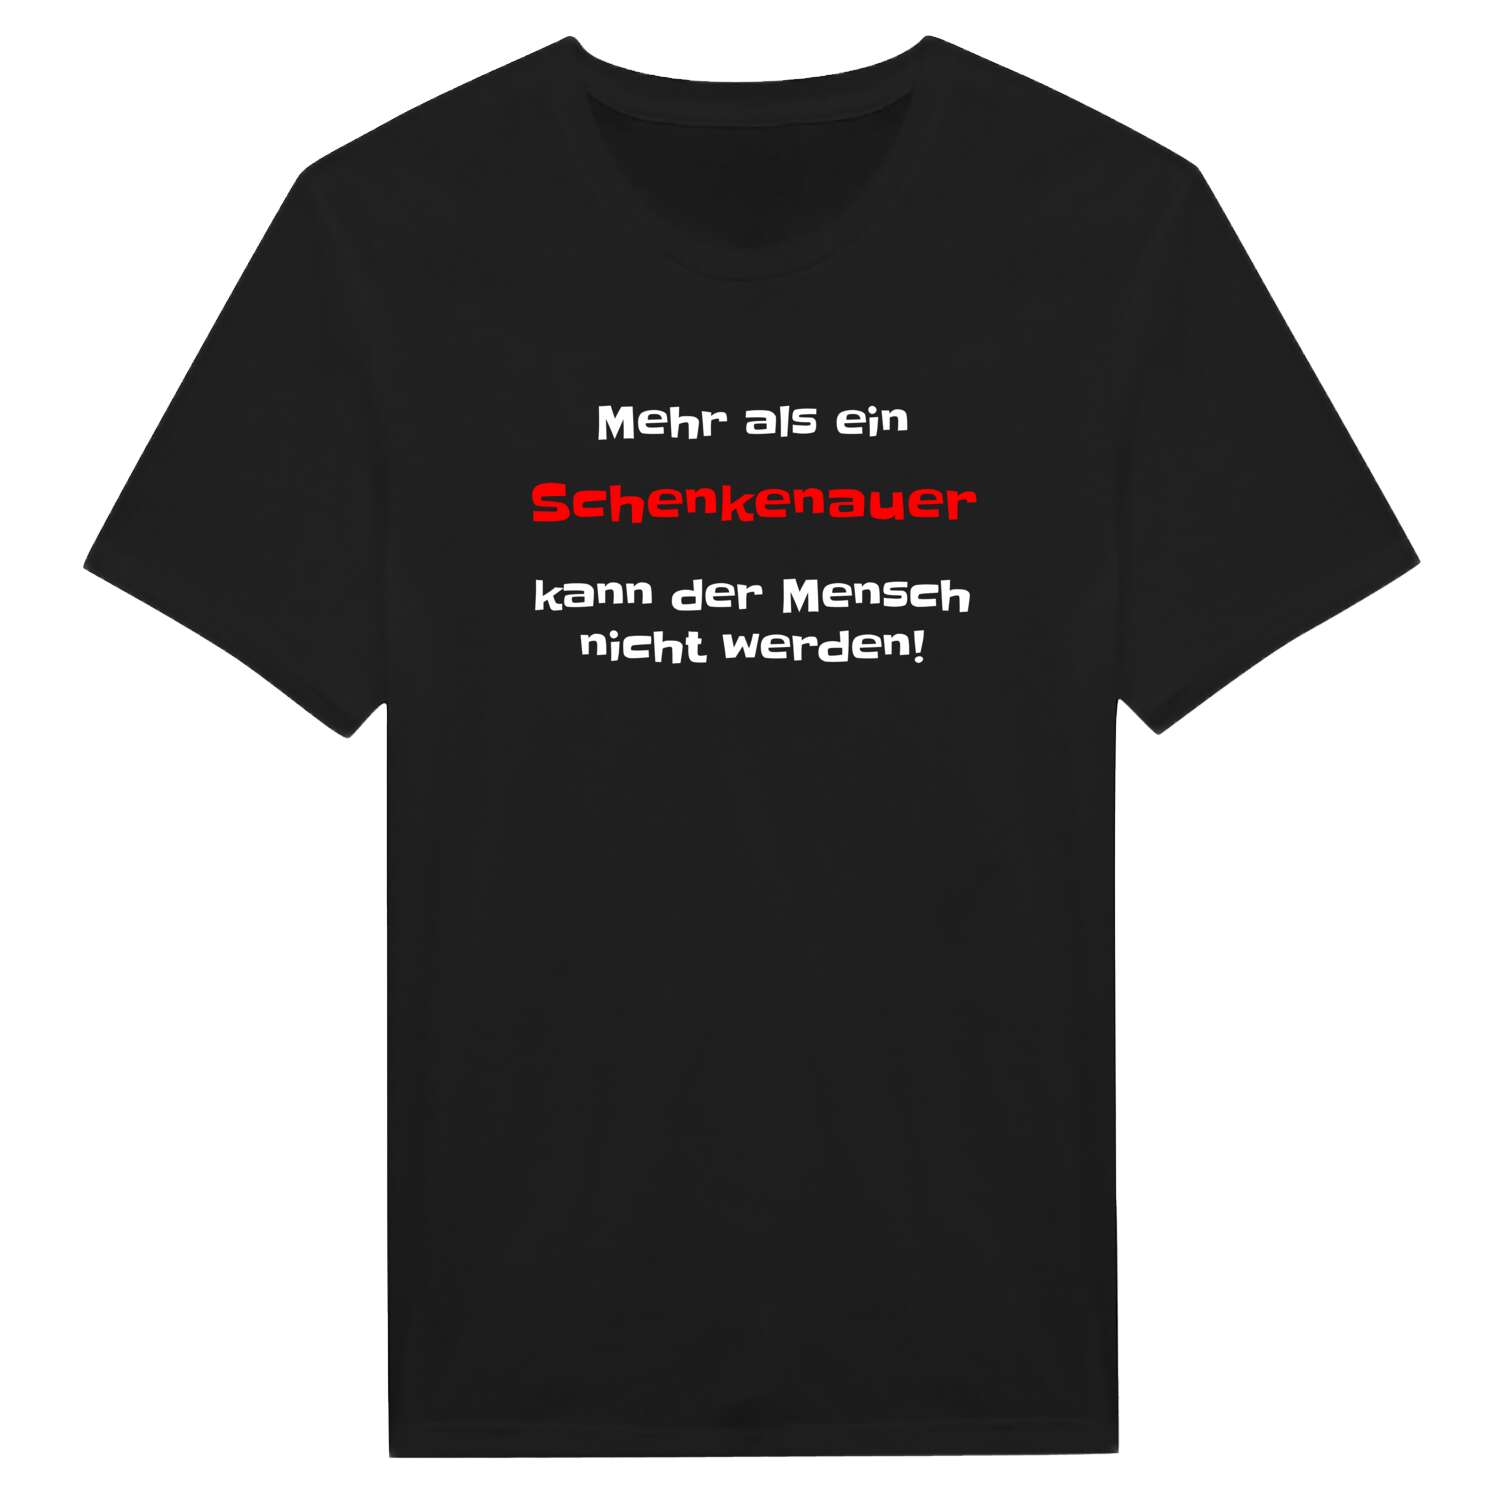 Schenkenau T-Shirt »Mehr als ein«